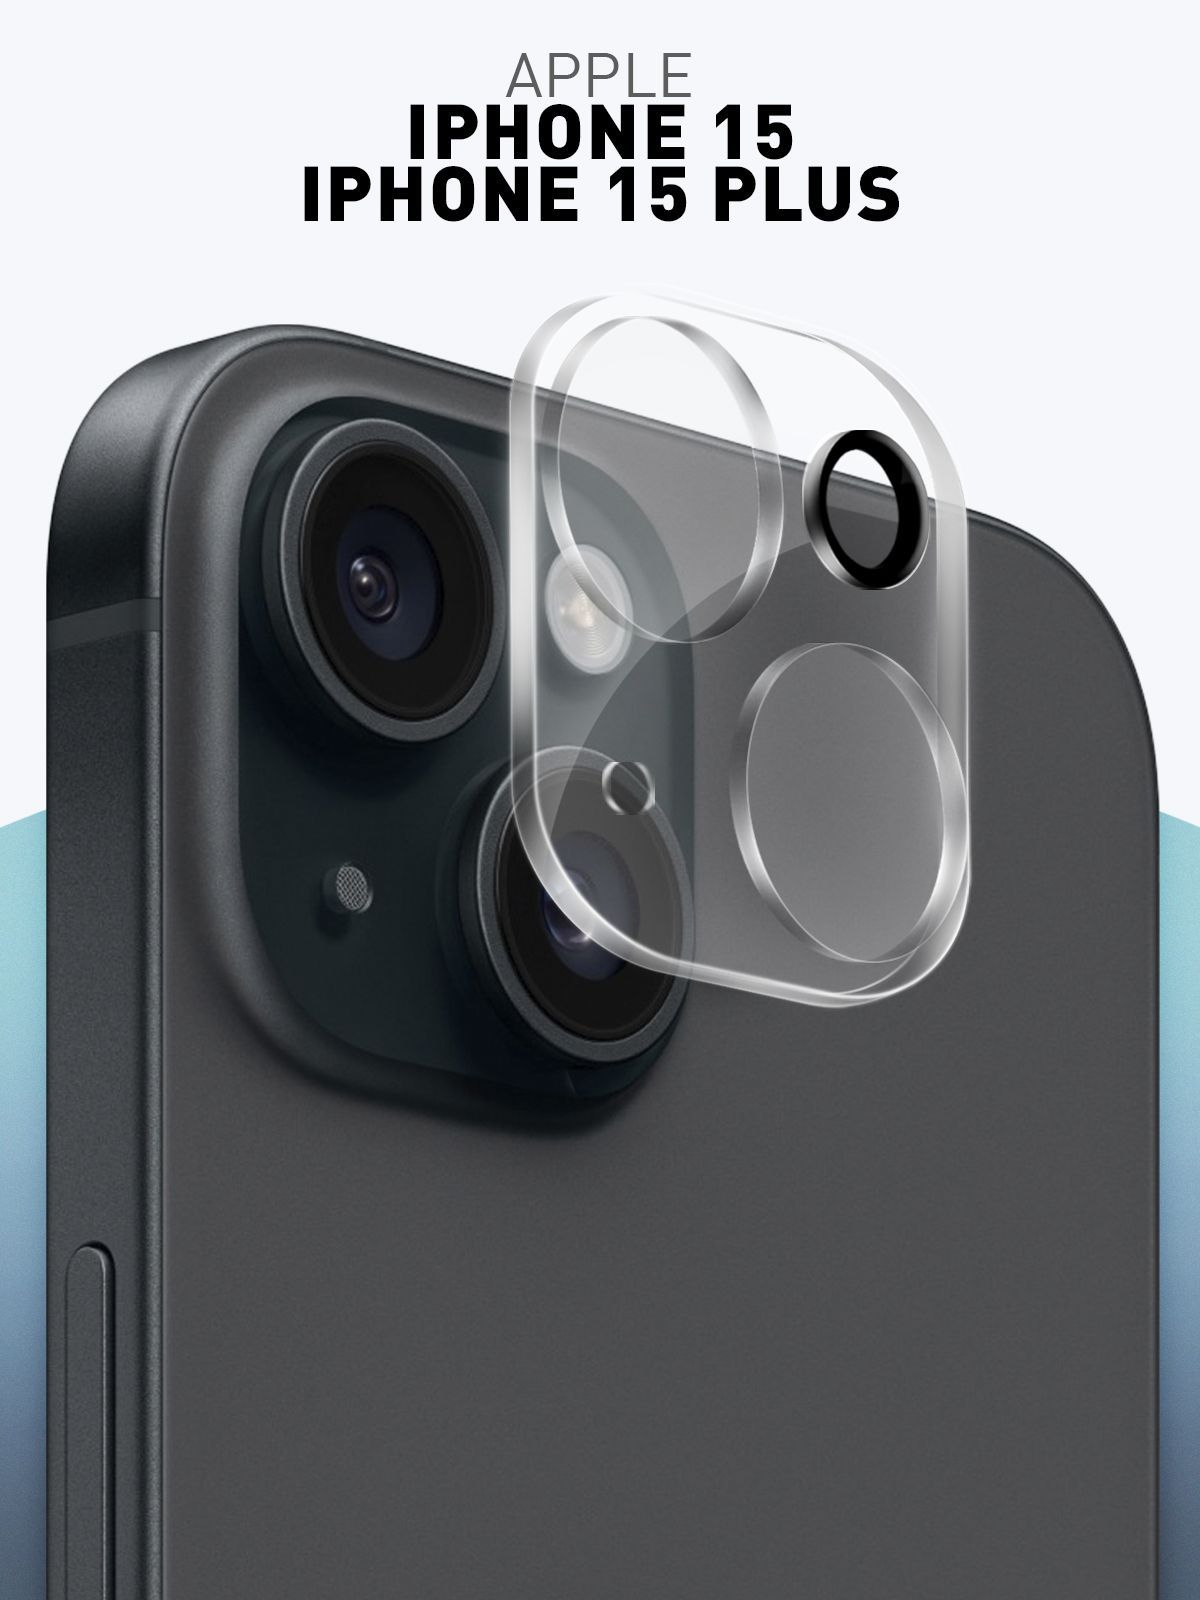 СтеклонакамерудляAppleiPhone15иiPhone15Plus(ЭплАйфон15и15Плюс),прозрачноезащитноестеклоROSCOнаблоккамерытелефона